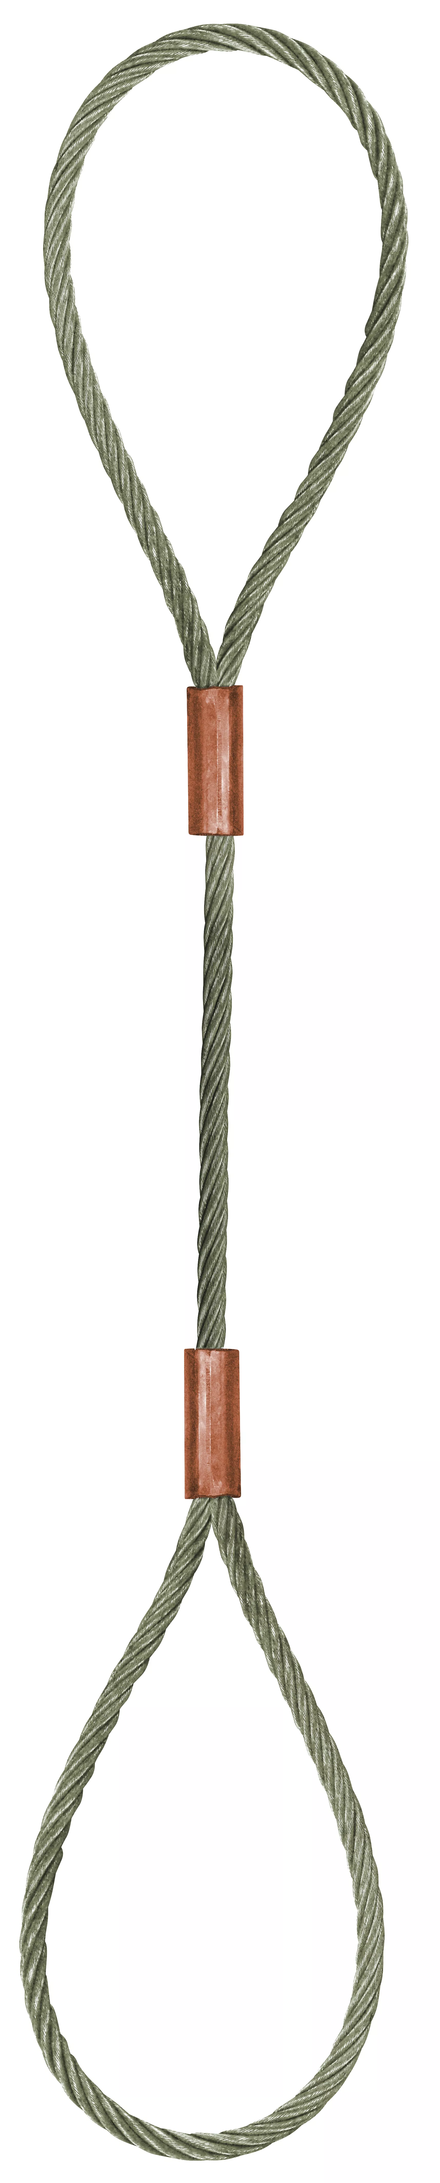 Élingue câble inox 2 grandes boucles d.12 mm cmu 1,50 t LEVAC - 4700HI